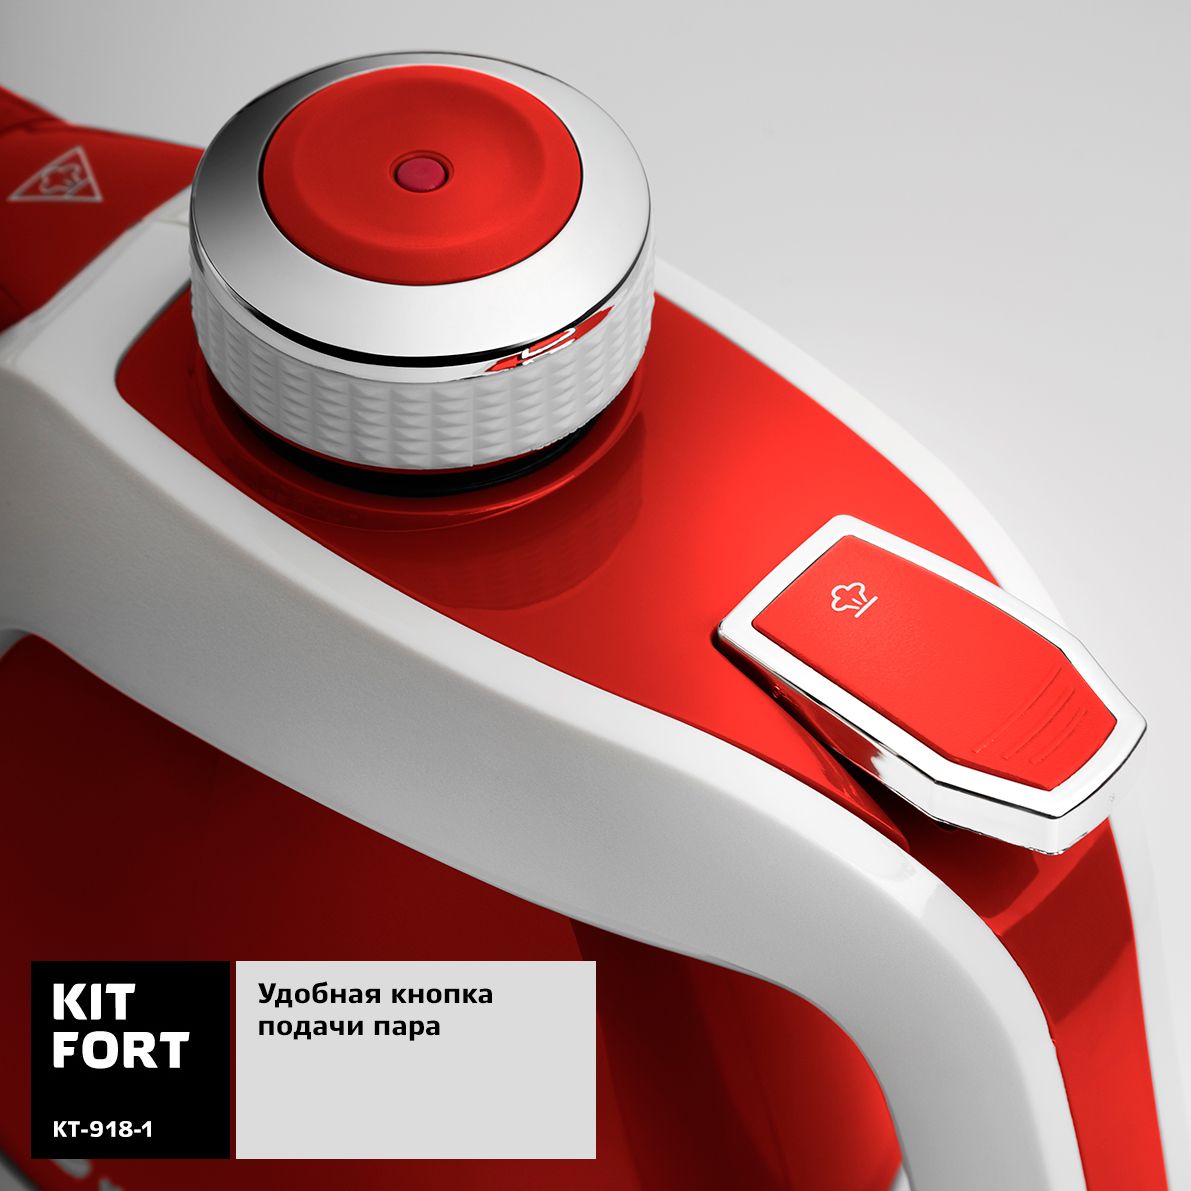  Kitfort KT-918-1, Red